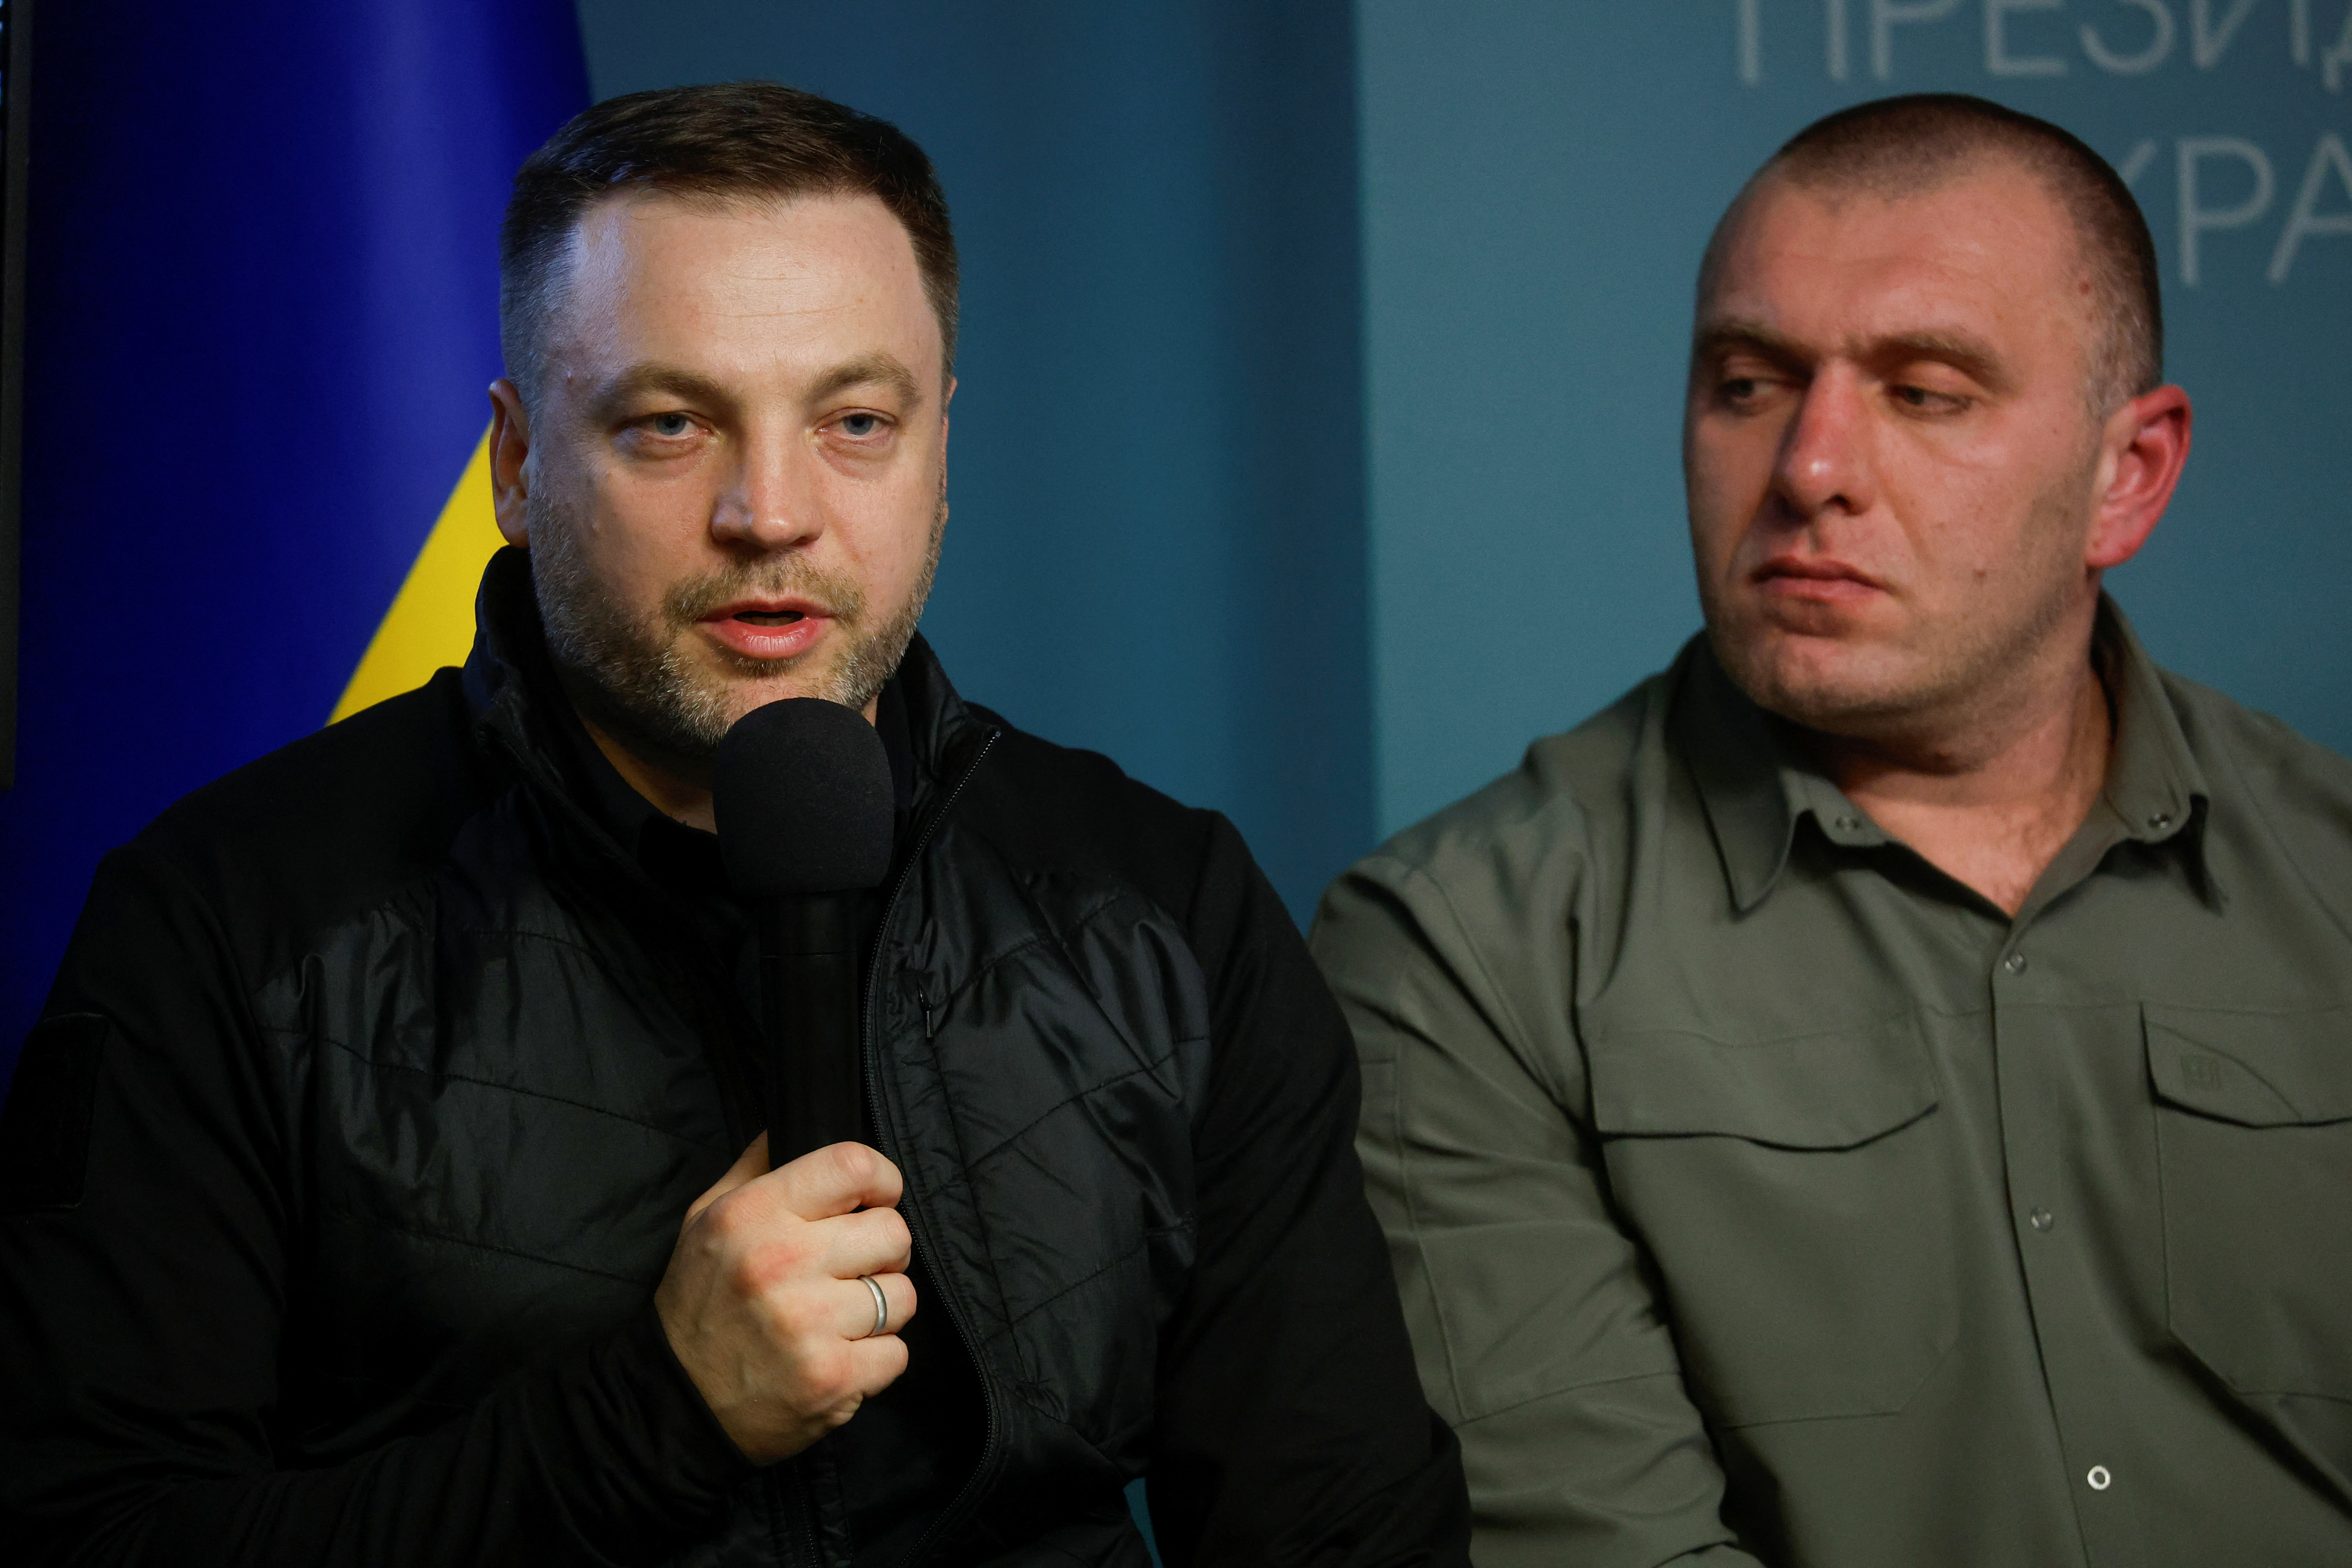 Denys Monastyrsky, a la izquierda, habla durante una conferencia de prensa en septiembre de 2022 (REUTERS/Valentyn Ogirenko)